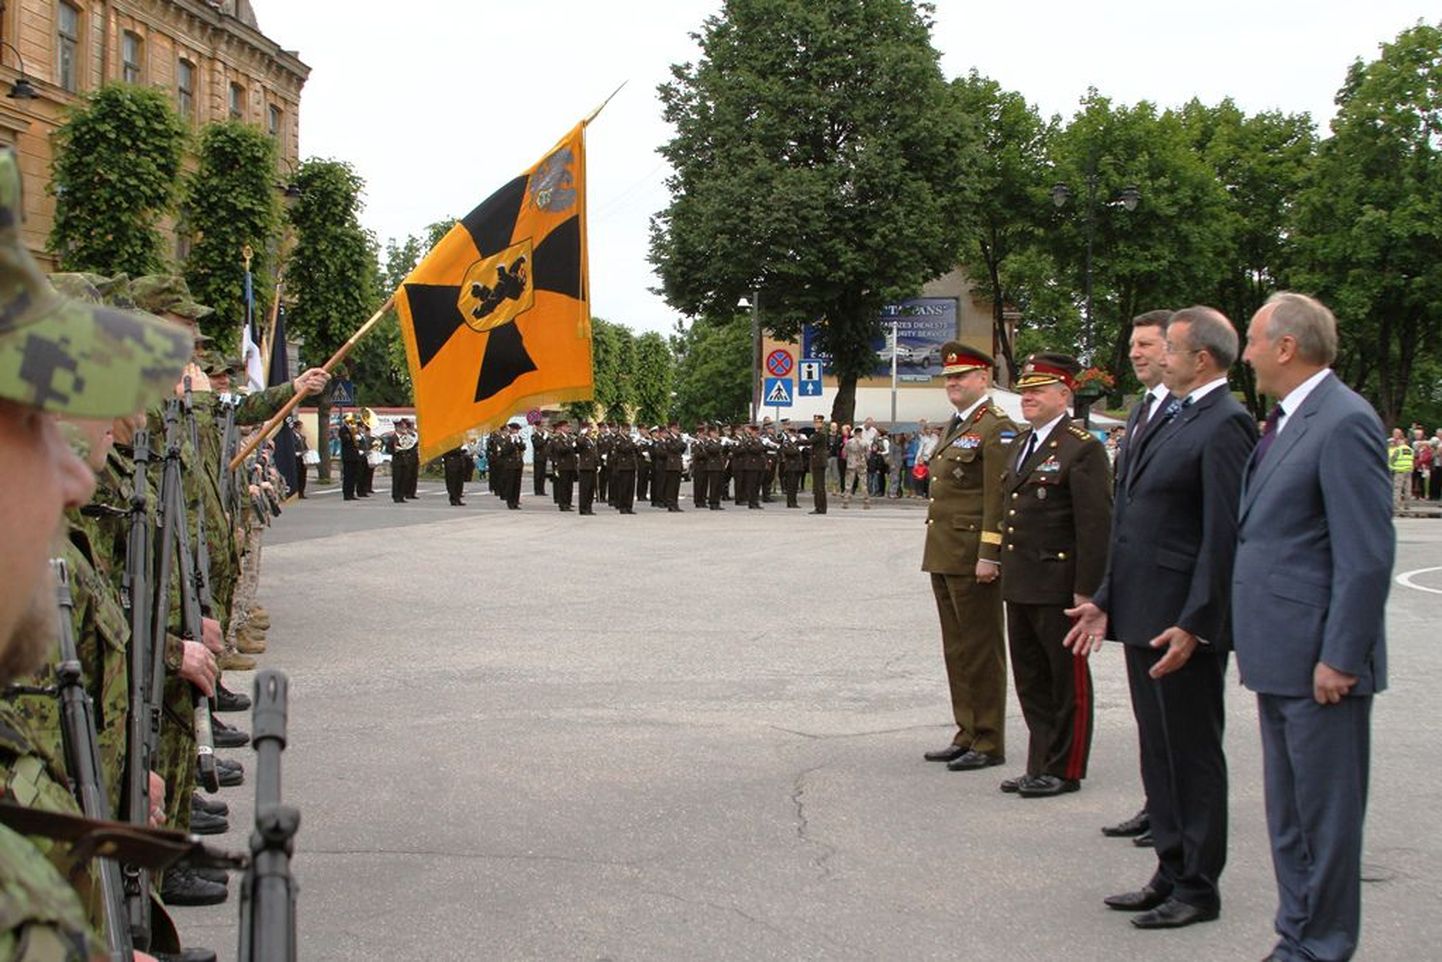 Võnnu lahingu aastapäeva paraadi võttis vastu Läti president Andris Bērziņš ja Eesti president Toomas Henrik Ilves, Eesti ja Läti kaitsevägede juhatajad ning mitmete teiste riikide esindajad.